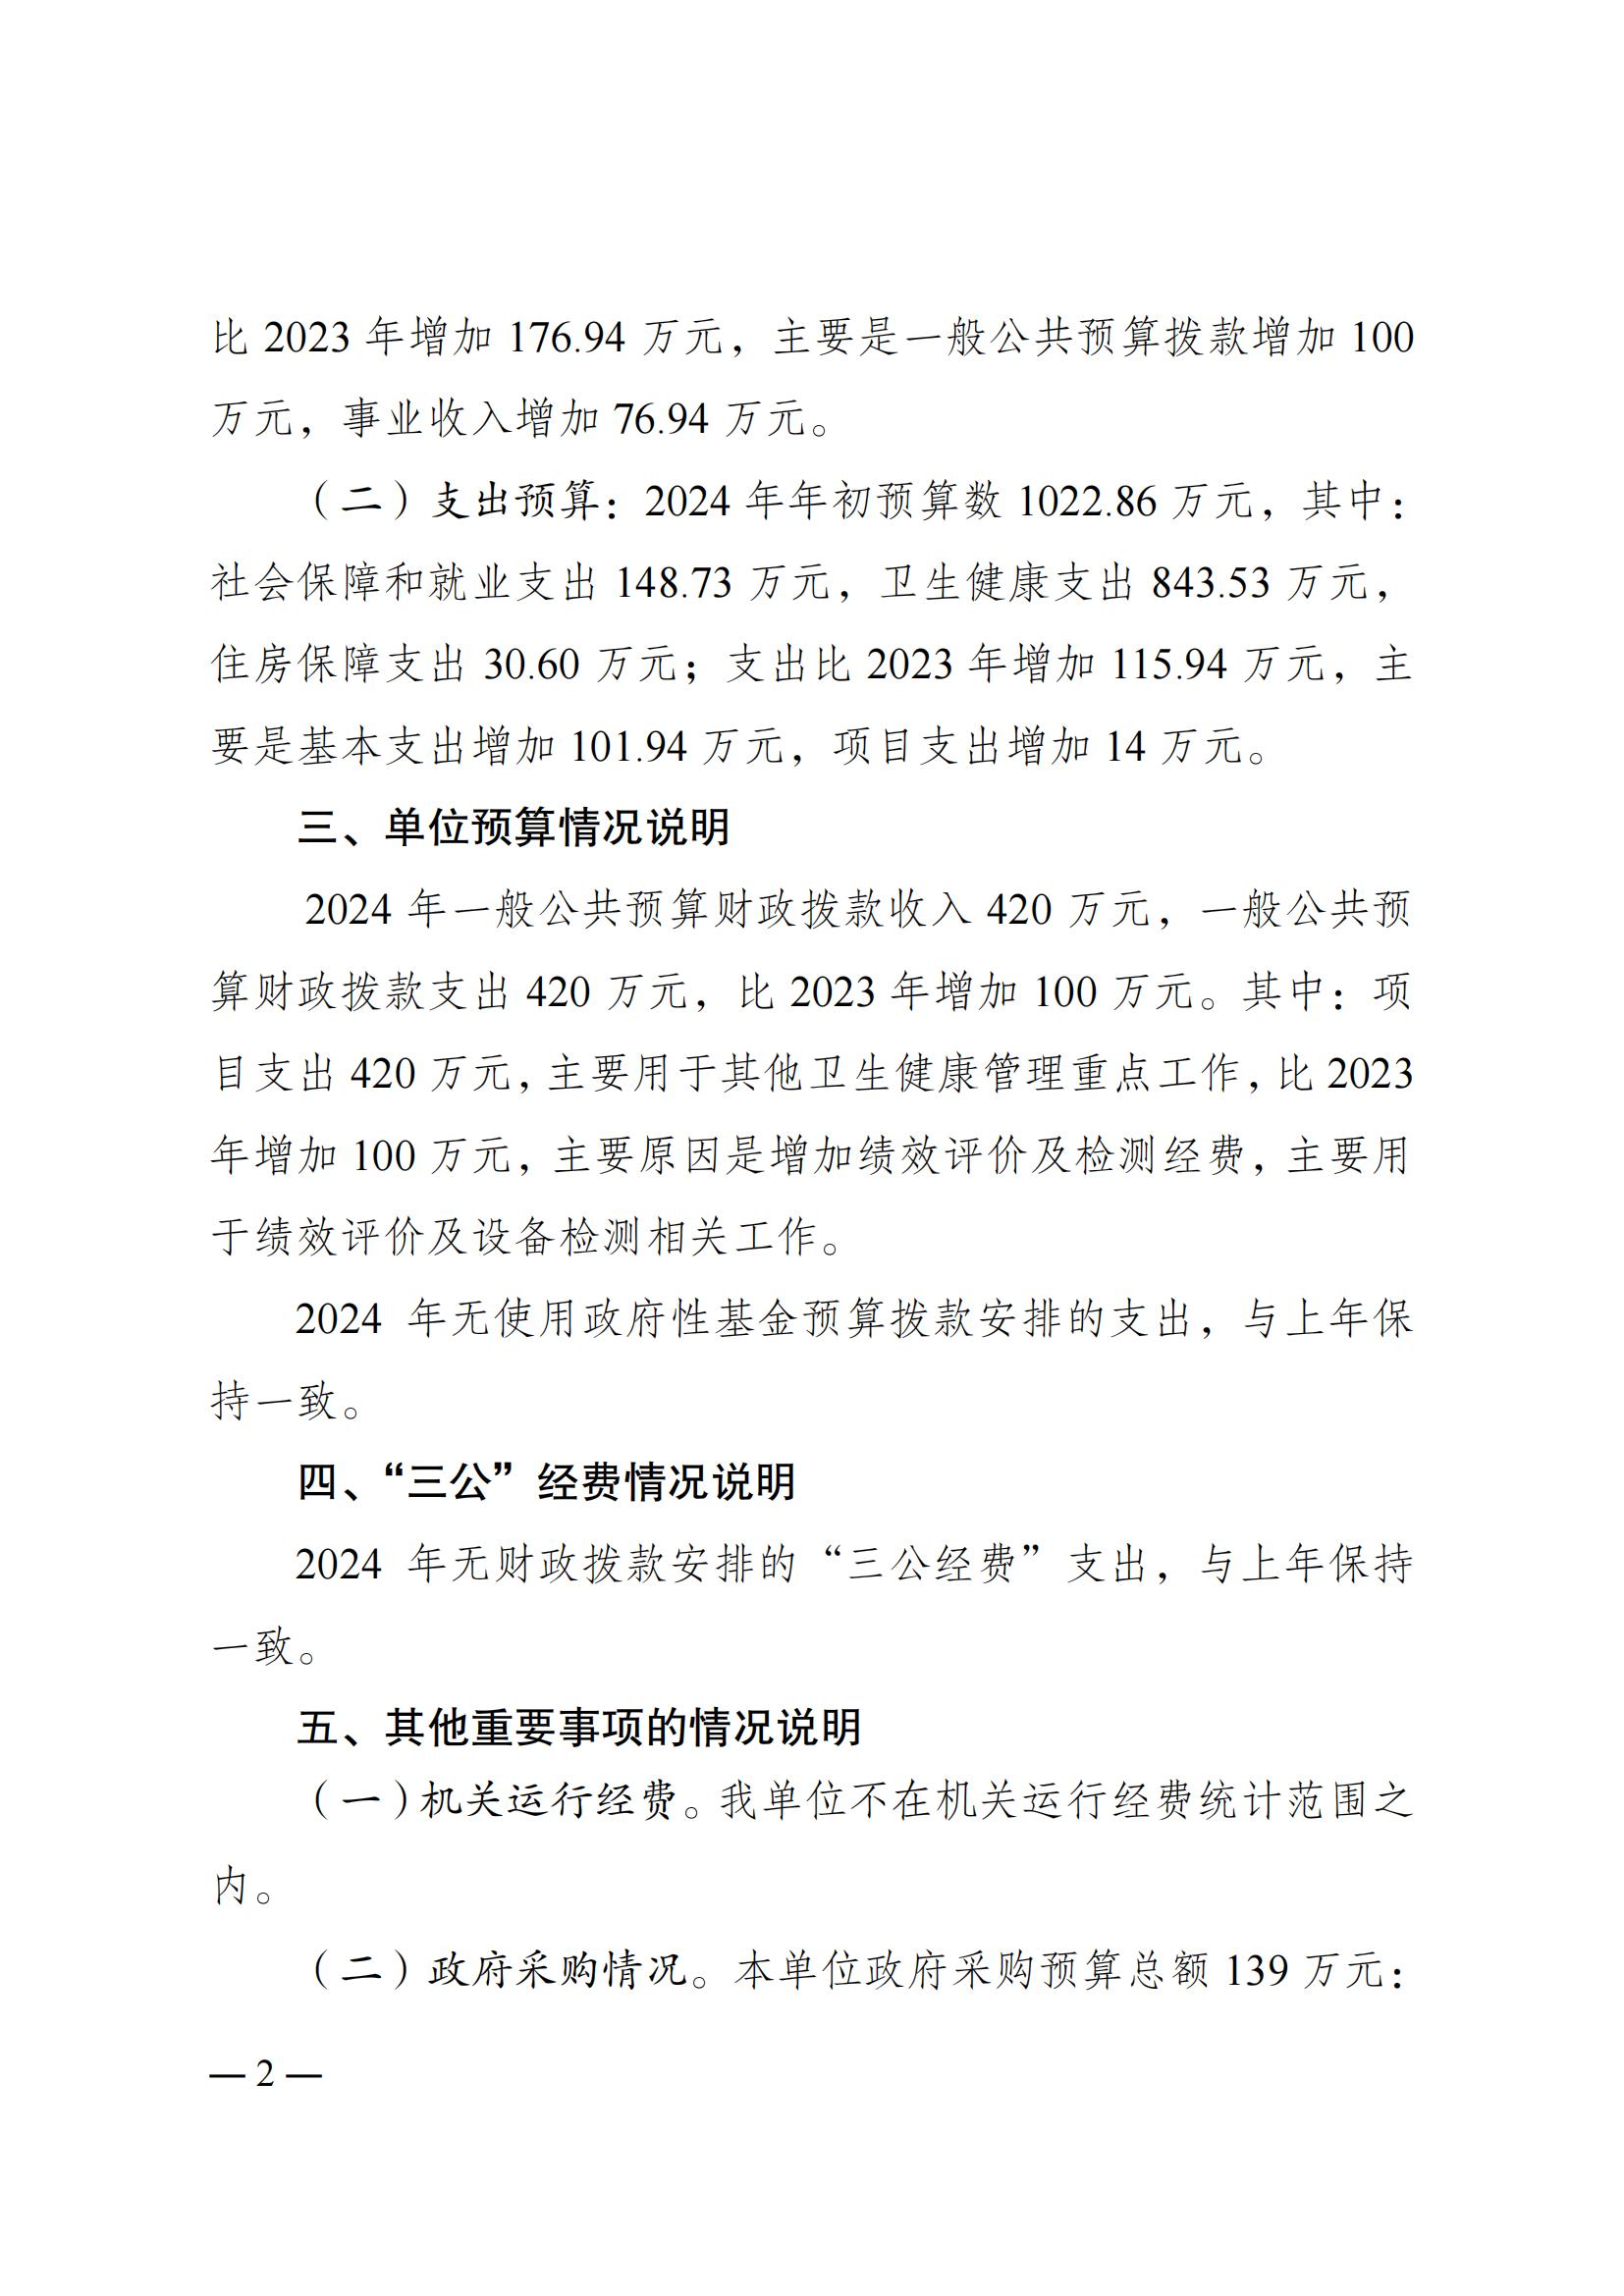 重庆市医疗设备质量检测所2024年单位预算情况说明_01.jpg